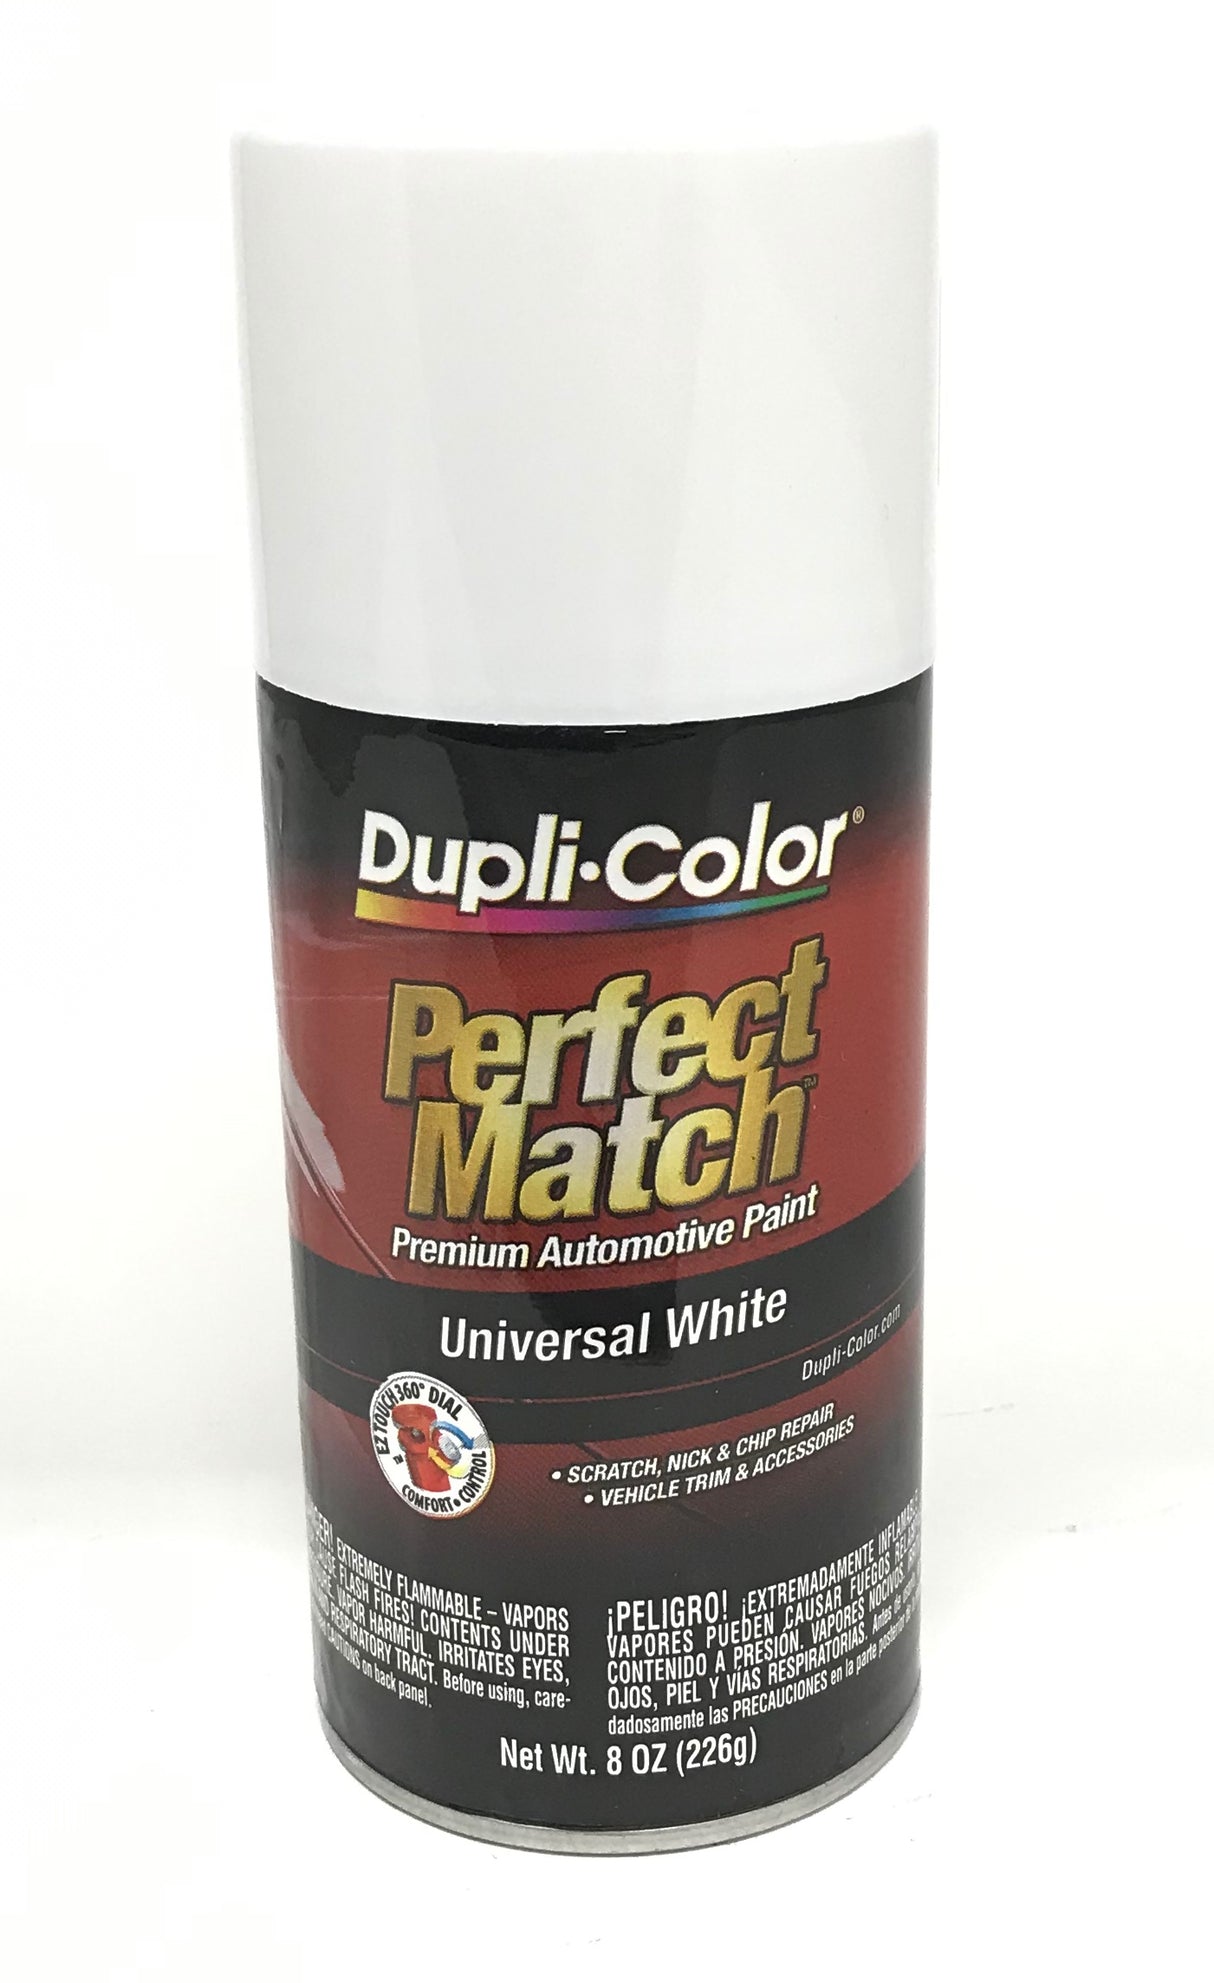 Duplicolor BUN0300 Perfect Match Universal White Automotive Paint - 8oz